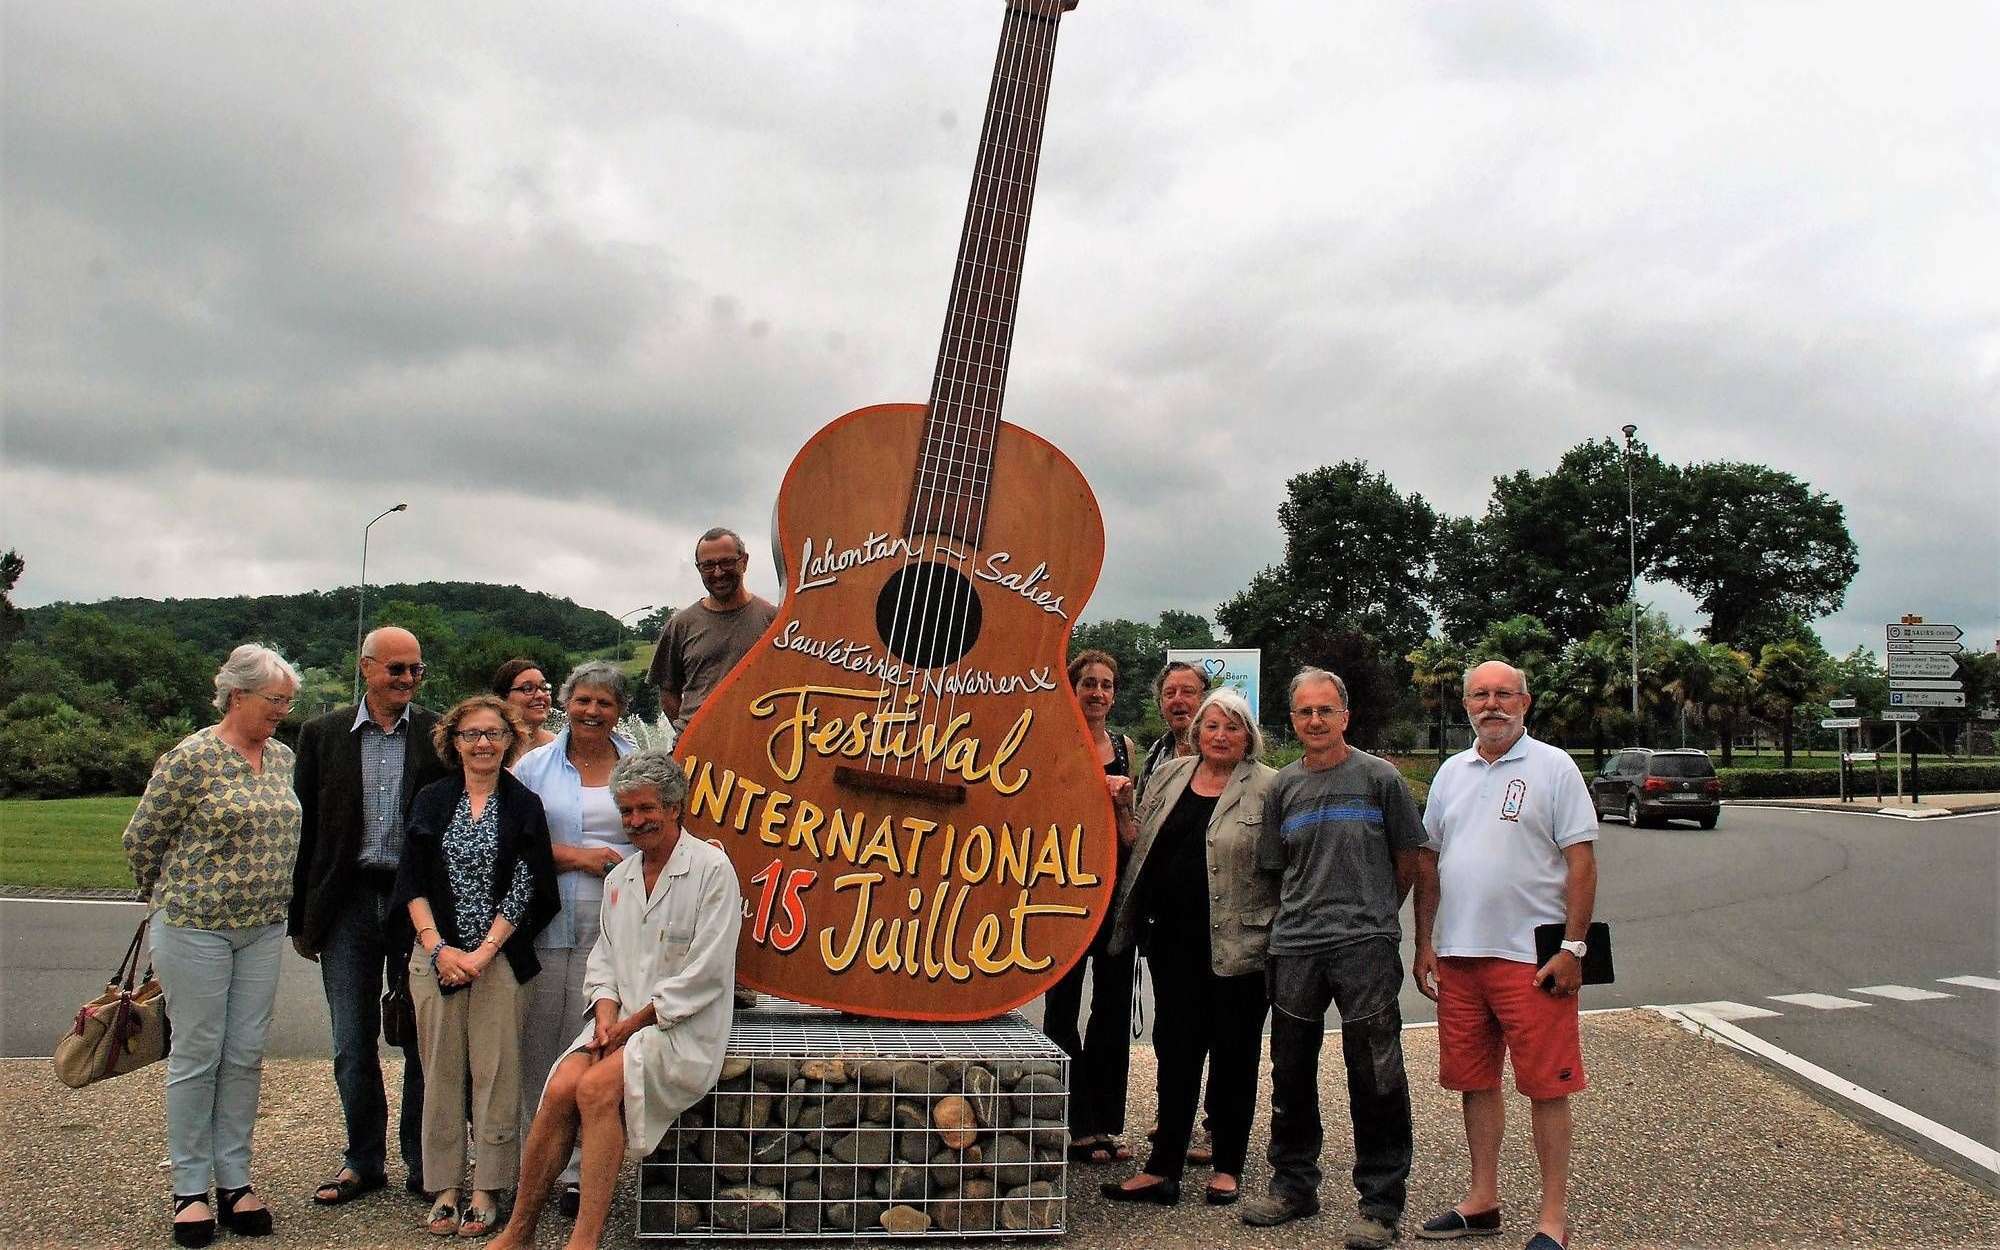 Guitare de 4m50 de haut posée en presence d'artistes, realisateurs et organisateurs du Festival Internation de Guitare en Béarn